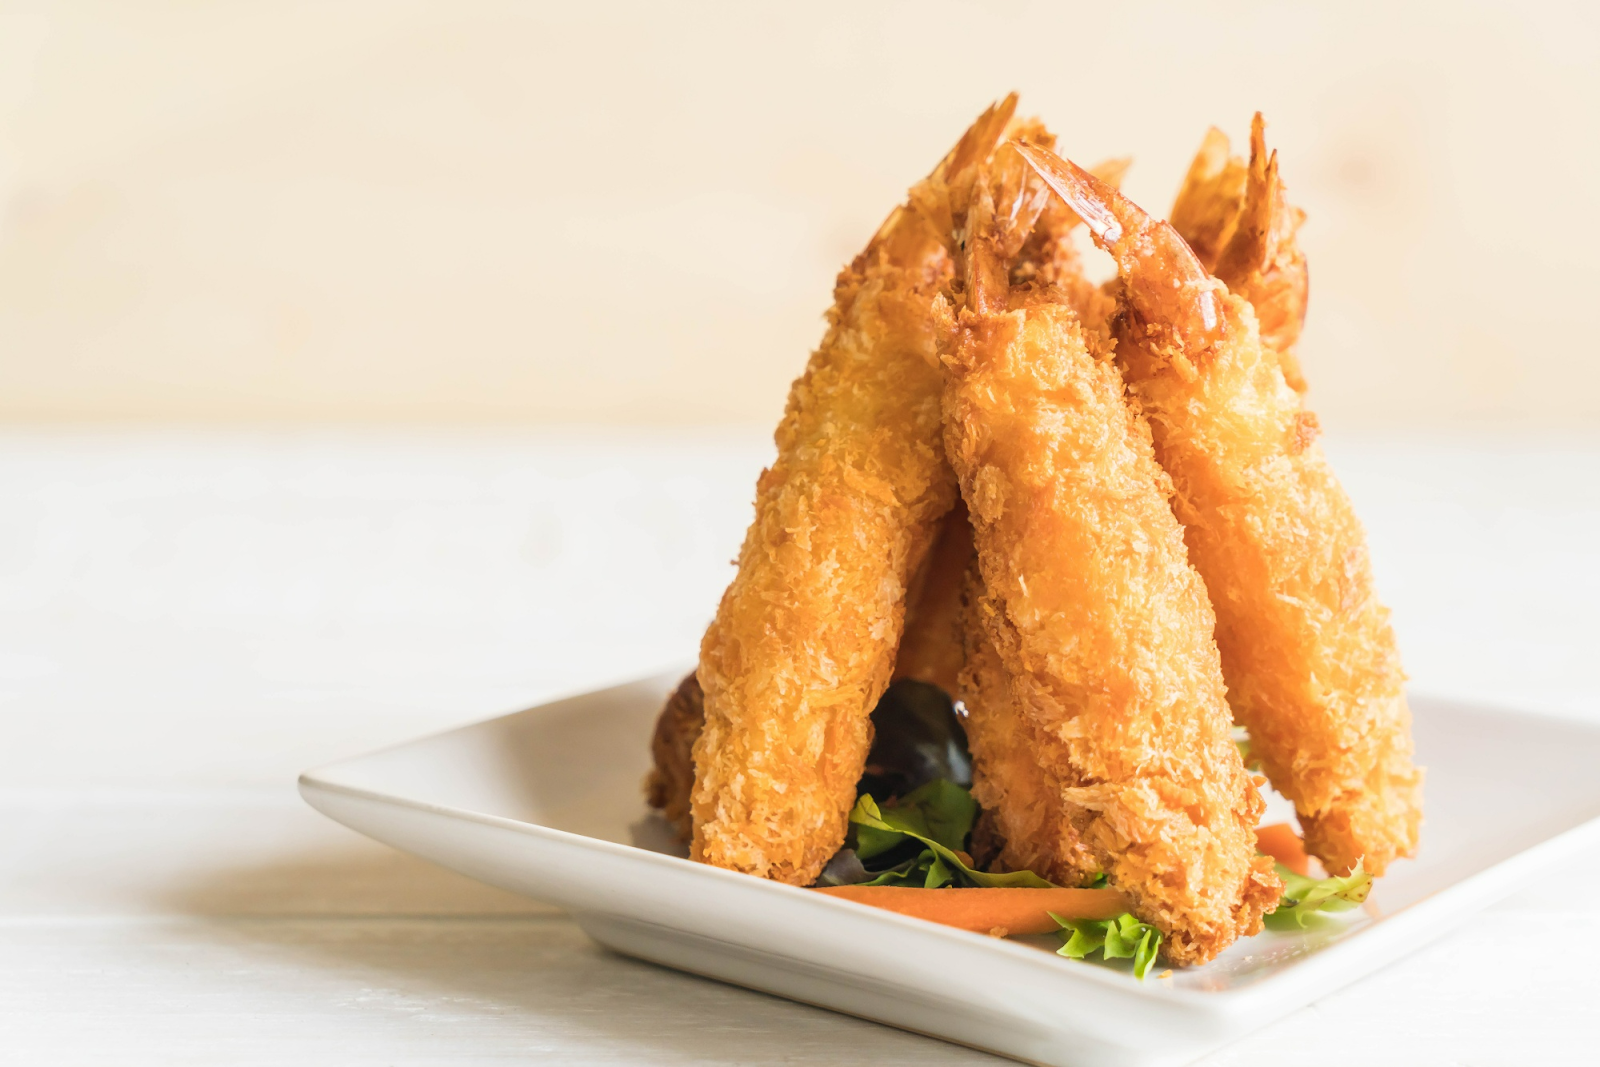 Memiliki rasa yang renyah dan gurih membuat tempura mempunyai banyak peminat